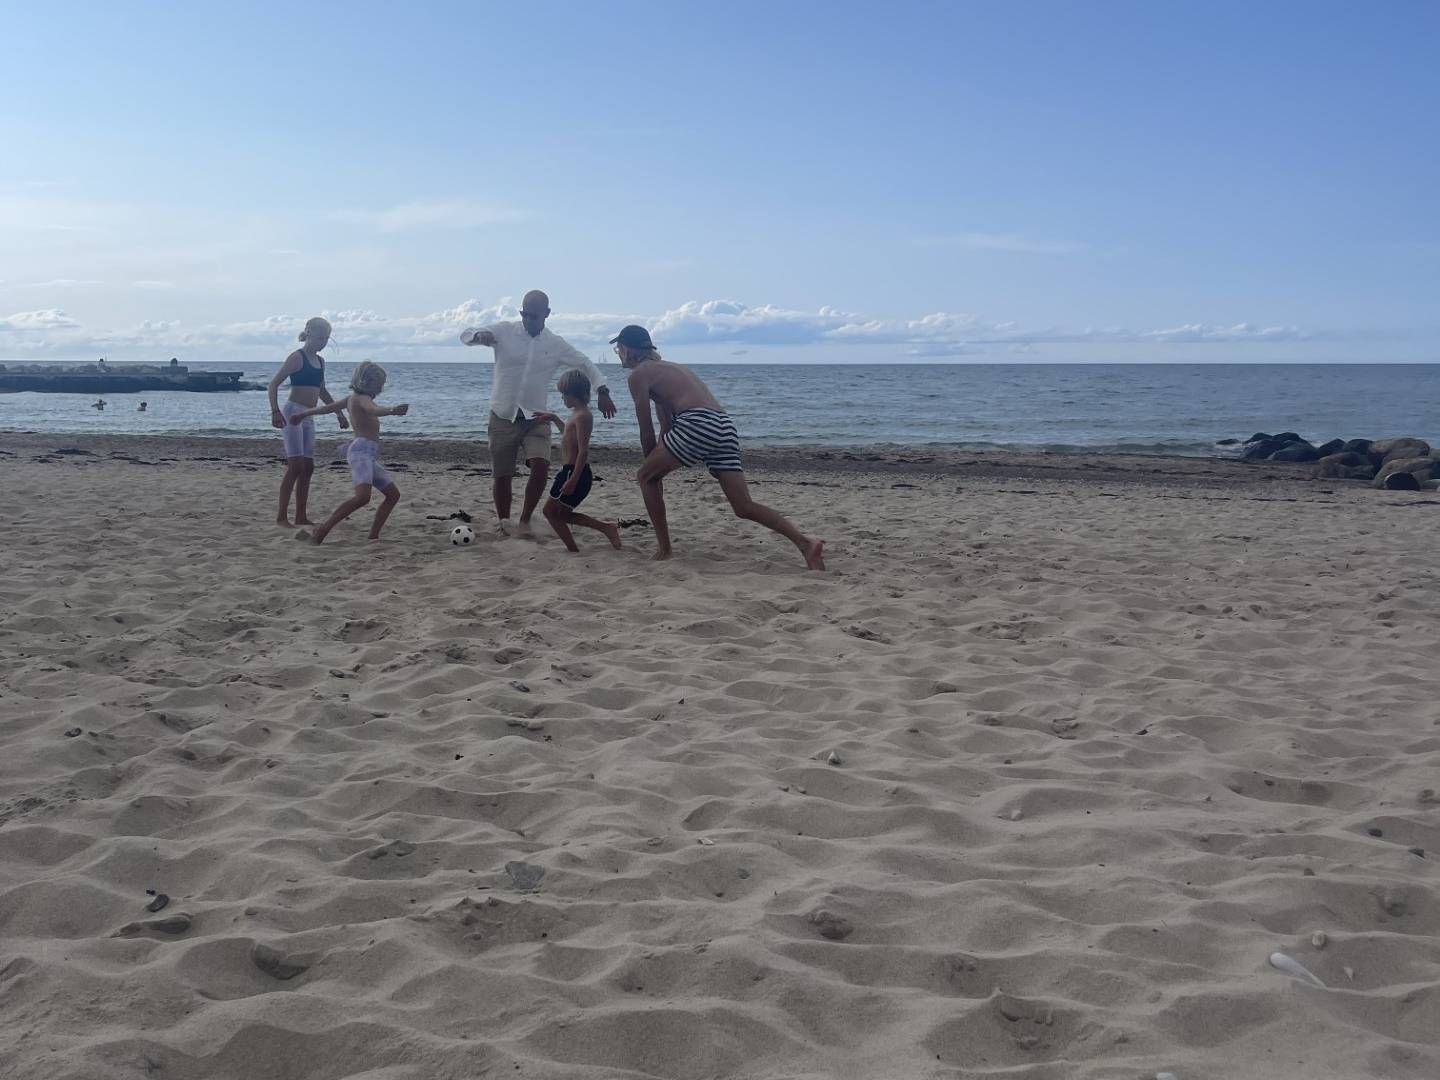 «DEJLIG Å VÆRE NORSK»: Her er Tom André Svenning-Gultvedt i ferd med å sparke en fotball, sammen med sine to døtre til venstre. Til høyre for Svenning-Gultvedt er sønnen hans og en venn. Bildet er tatt på stranden i Tisvildeleje (Helenekilde) i Danmark. | Foto: Privat